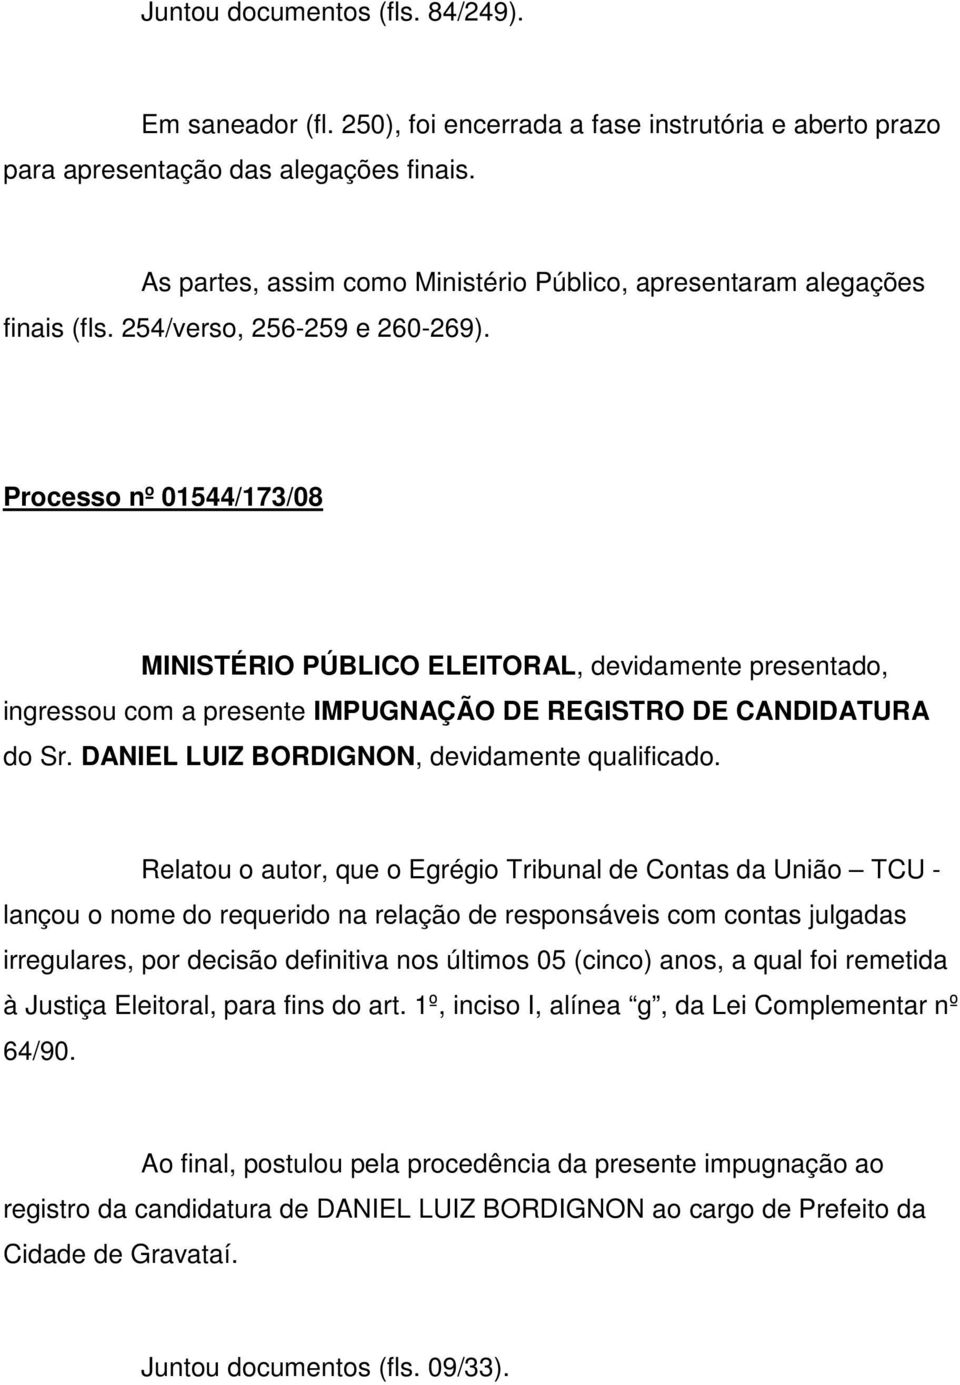 Processo nº 01544/173/08 MINISTÉRIO PÚBLICO ELEITORAL, devidamente presentado, ingressou com a presente IMPUGNAÇÃO DE REGISTRO DE CANDIDATURA do Sr. DANIEL LUIZ BORDIGNON, devidamente qualificado.